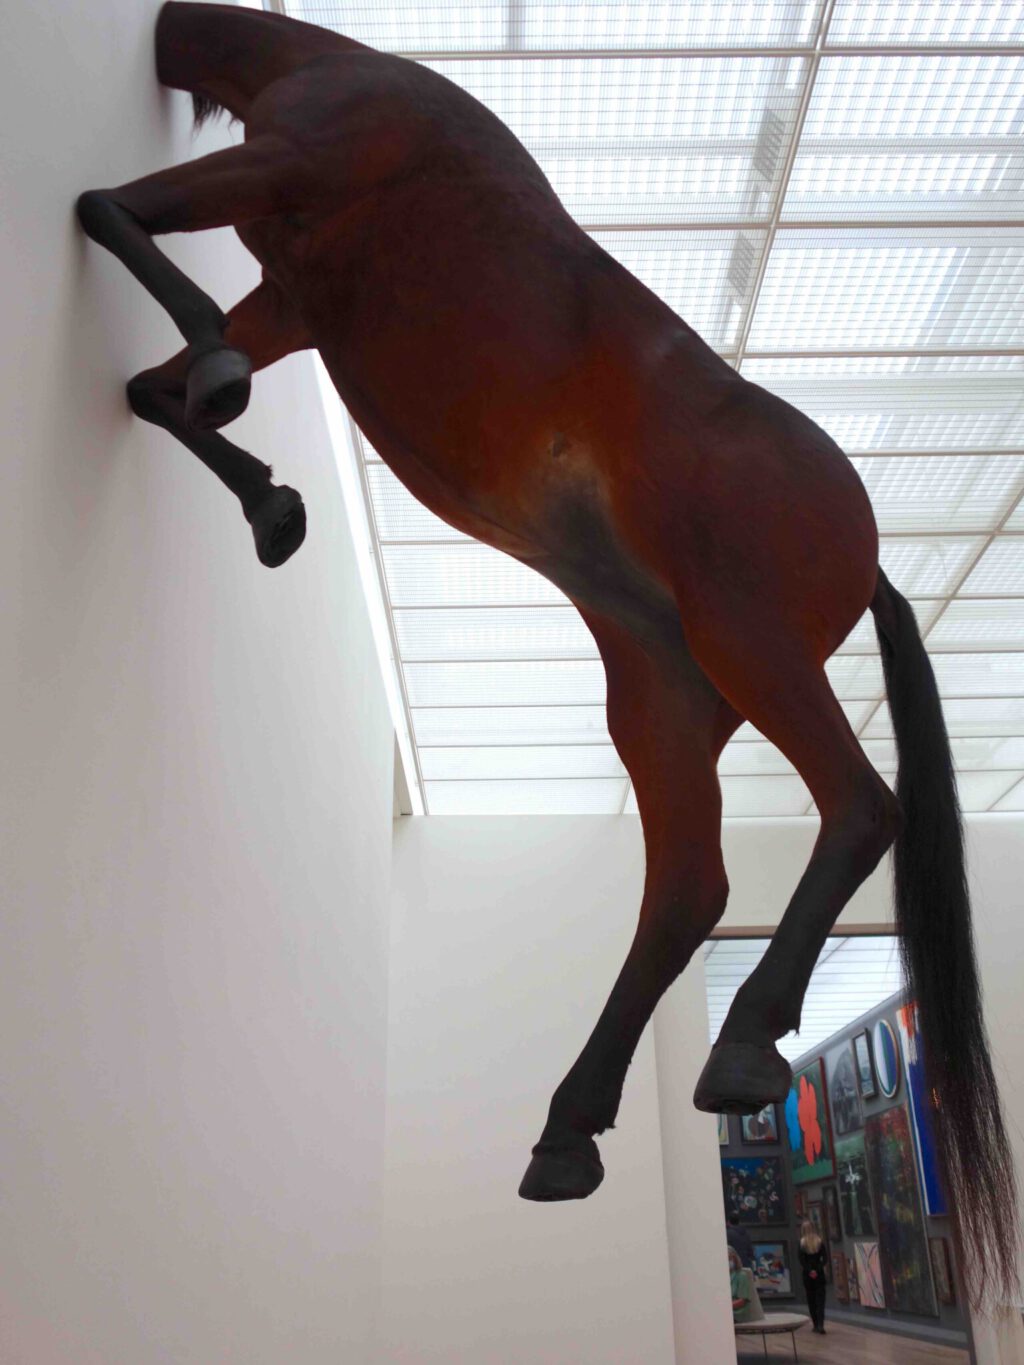 Maurizio Cattelan “Untitled” 2007, Präpariertes Pferd (The animal was not hurt.)